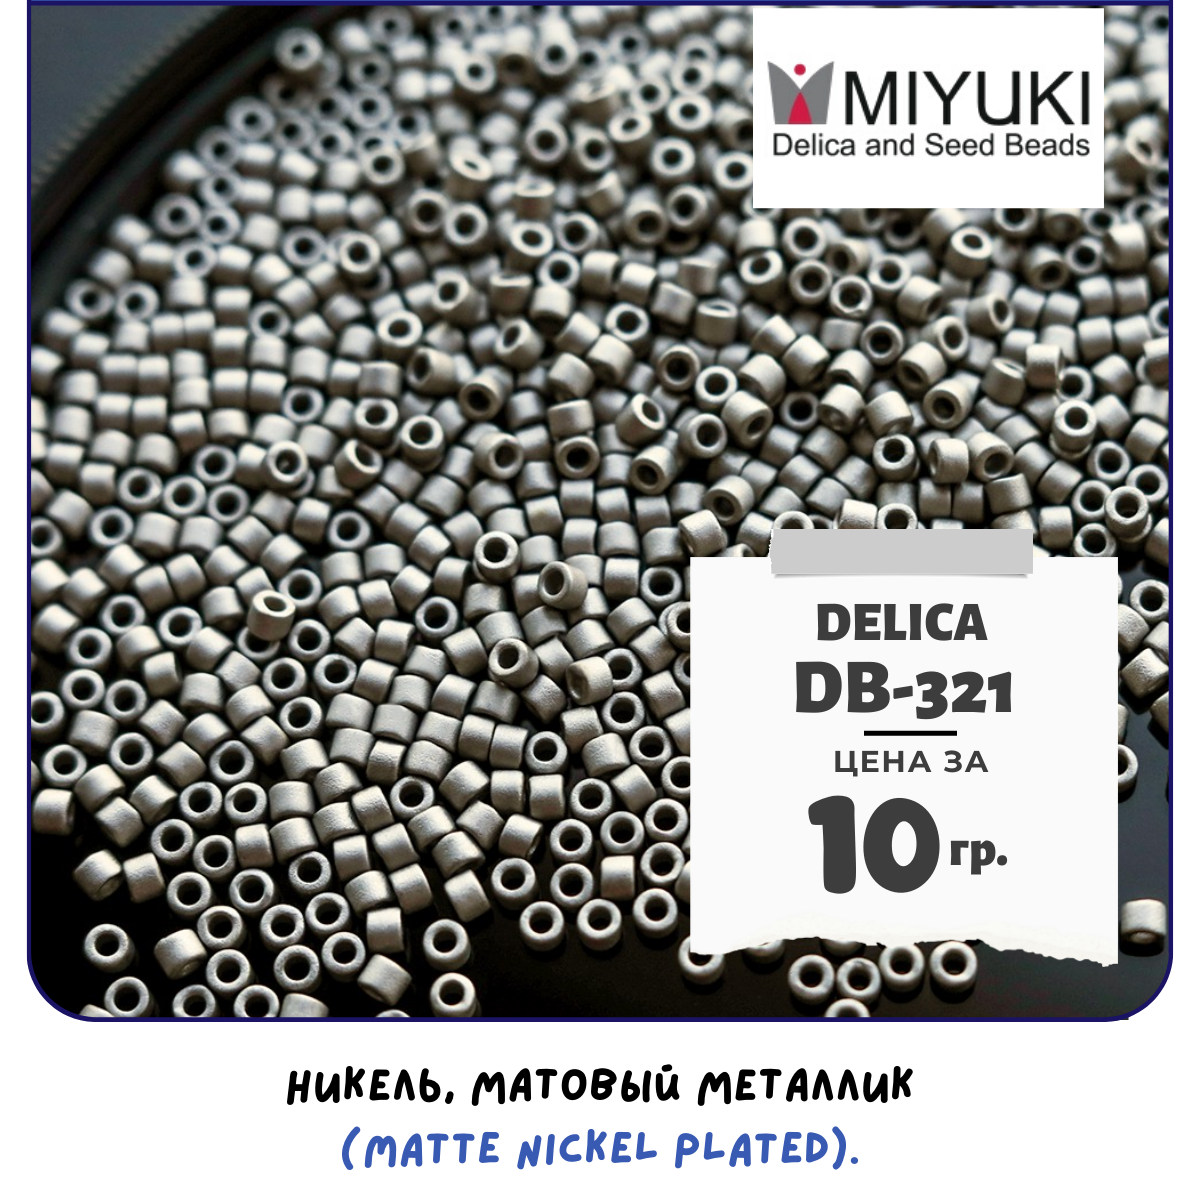 Бисер японский MIYUKI 10 гр Миюки цилиндрический Delica Делика 11/0 размер 11 DB-321 цвет никель, матовый металлик (Matte Nickel Plated)